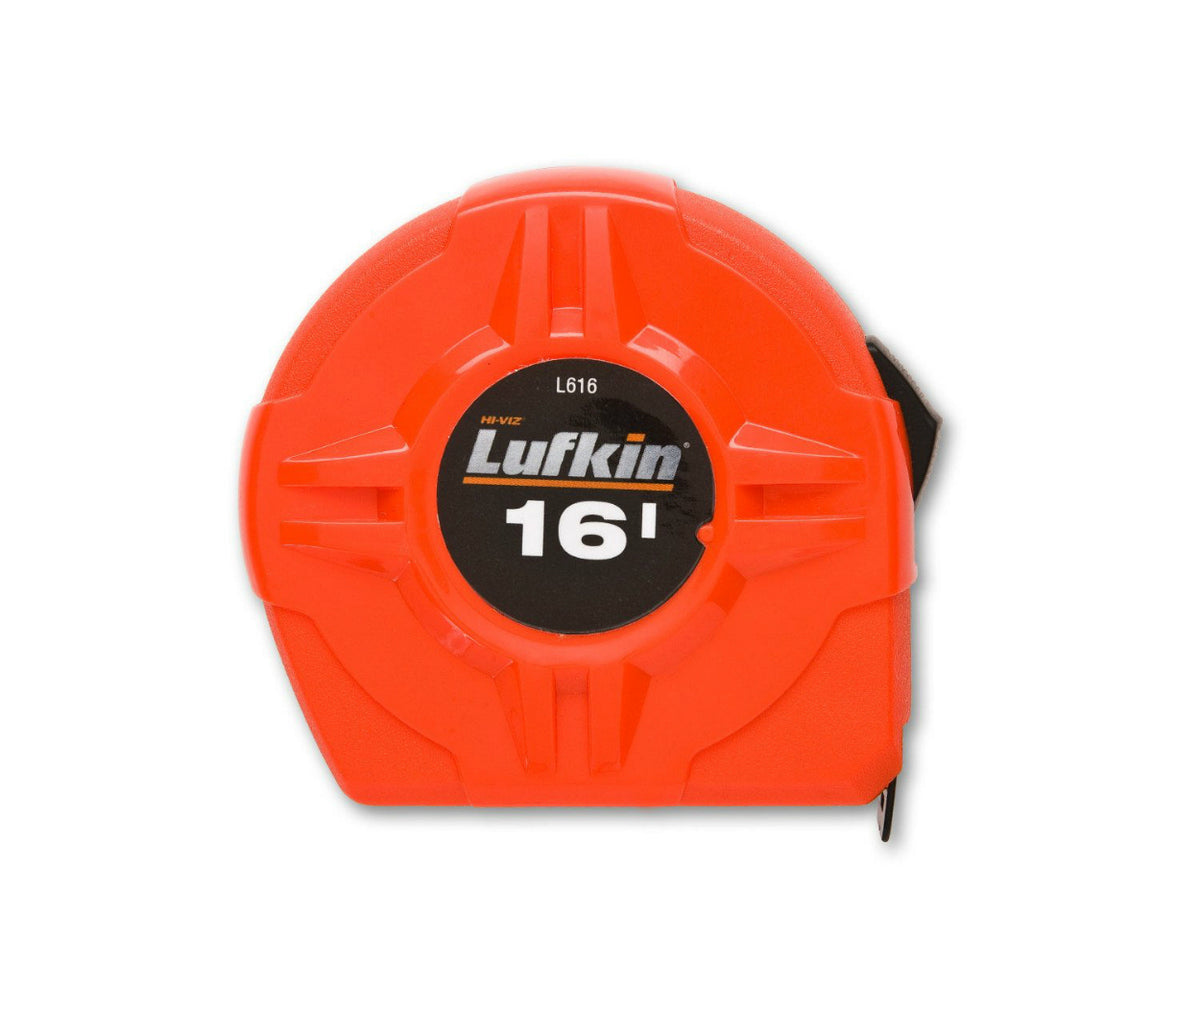 Lufkin L616N High-Viz Orange Measuring Tape, 3/4" x 16'